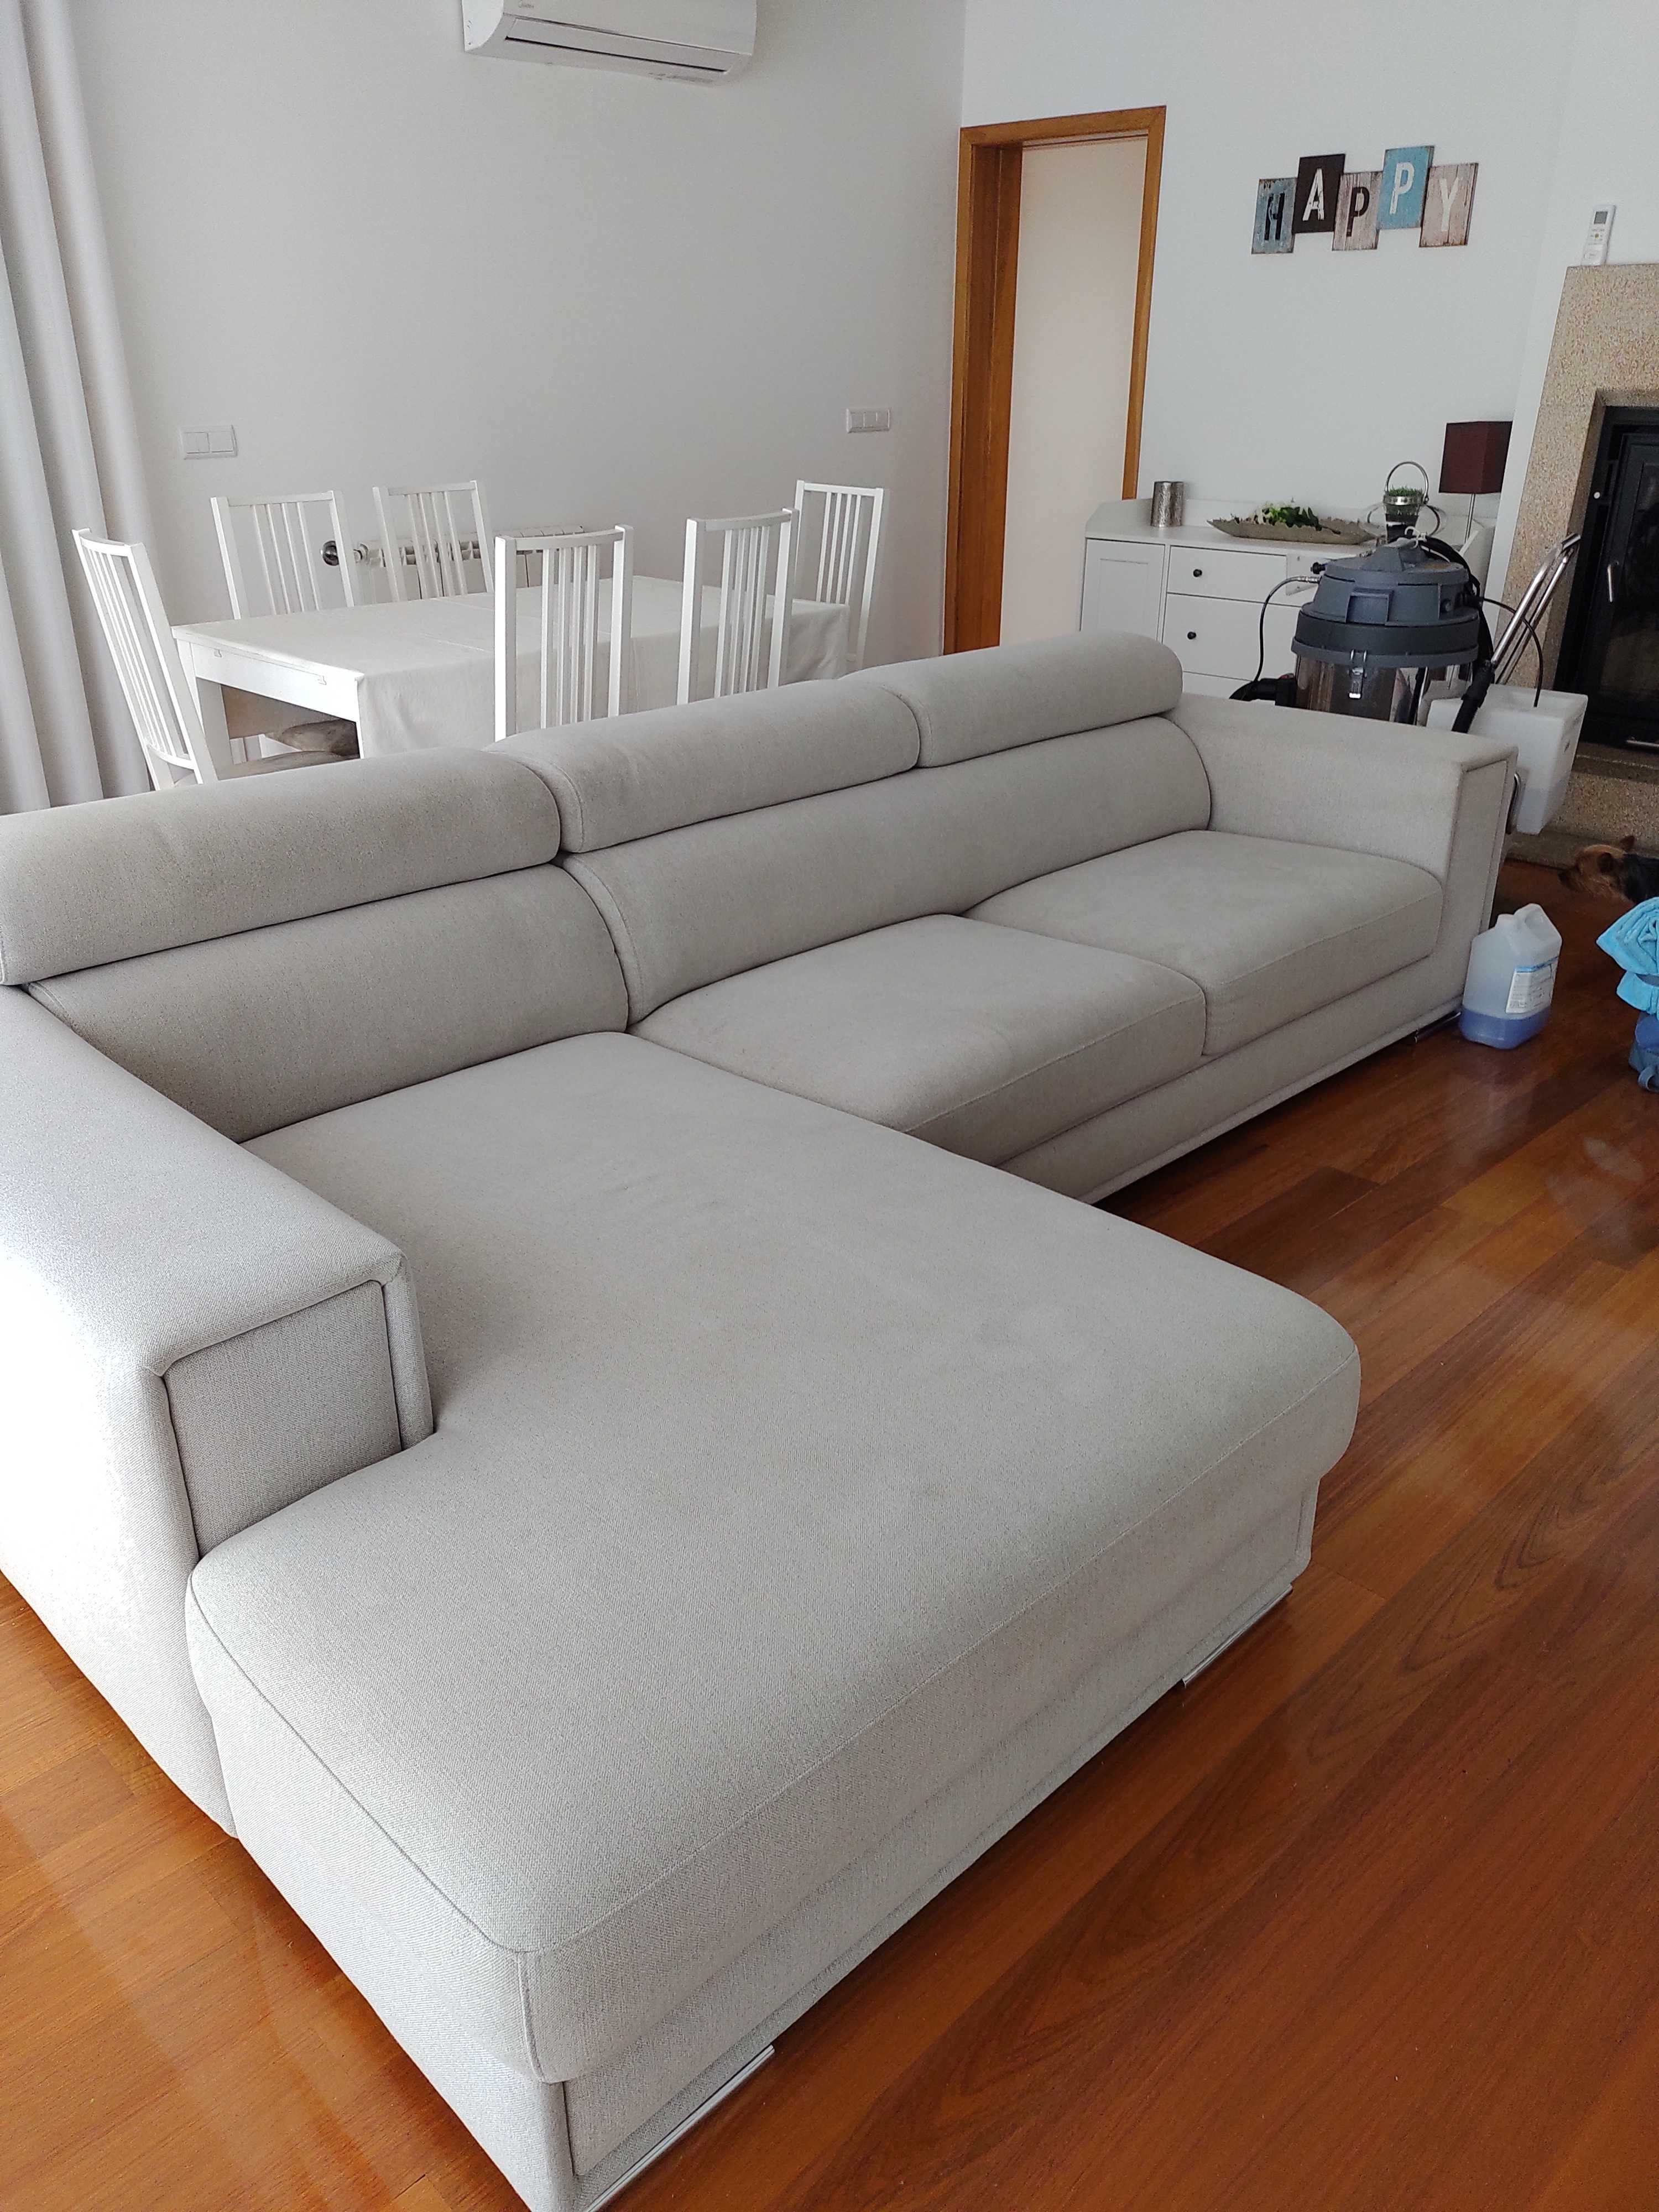 Limpeza, lavagem e higienização de sofás, tapetes, colchões